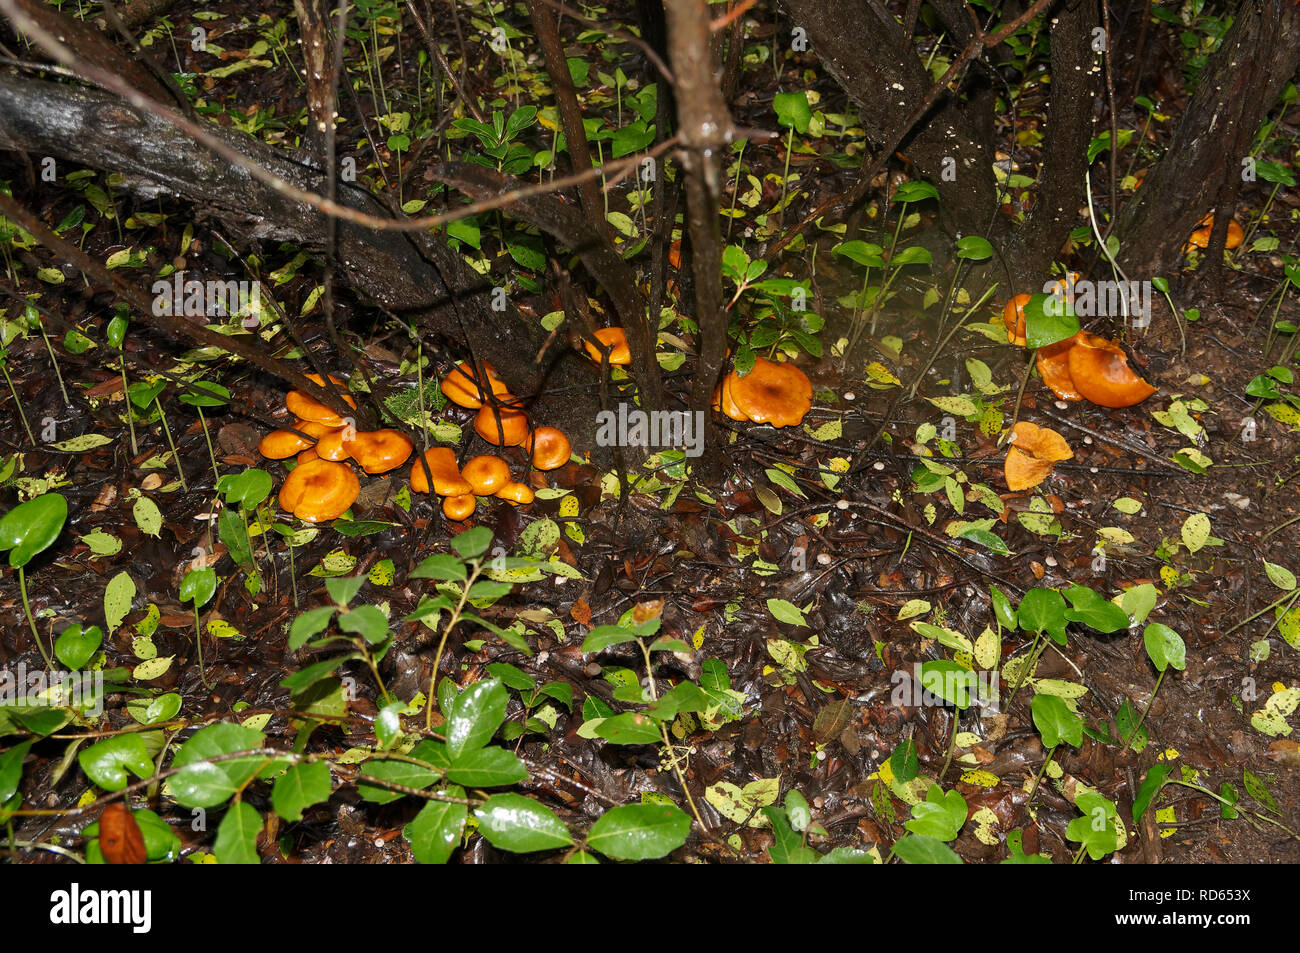 Omphalotus olearius, connu sous le nom de jack-o'-lantern, champignons vénéneux est un champignon orange. Sud de la France, Var. Banque D'Images